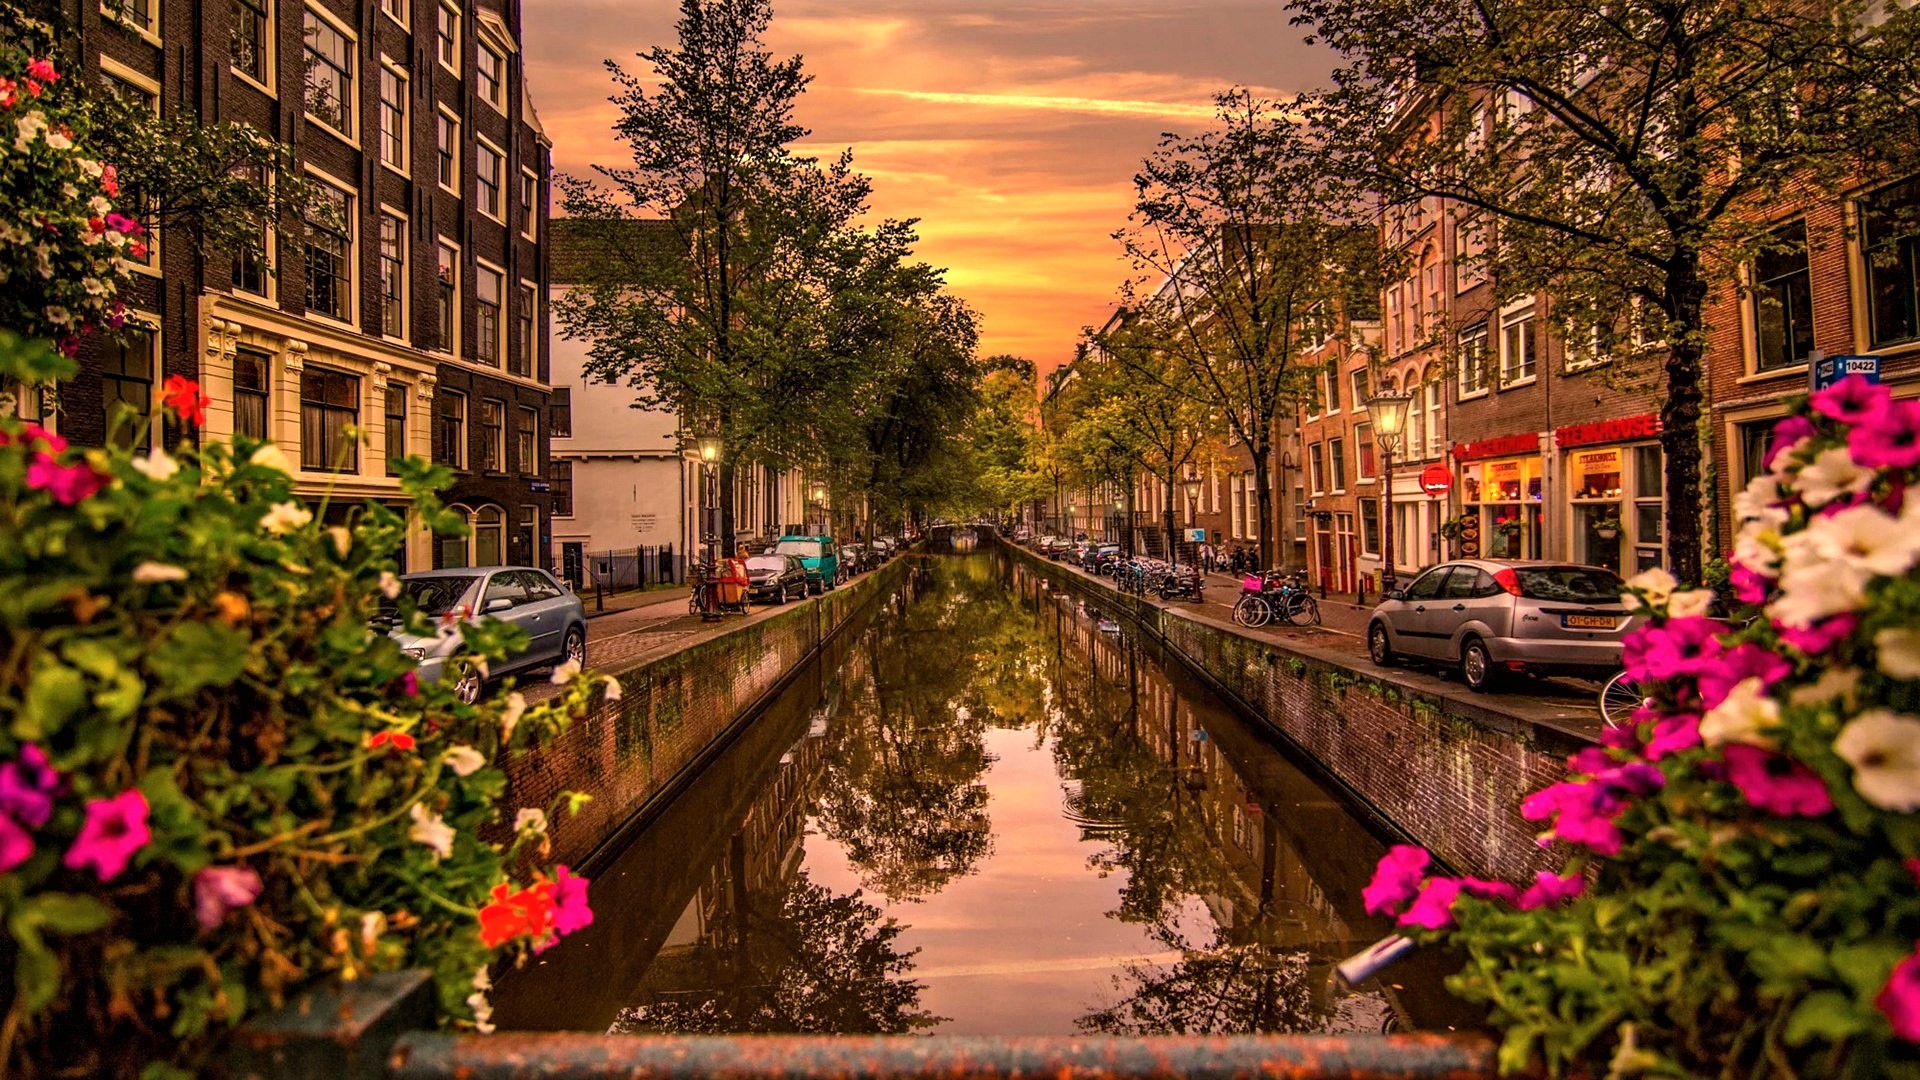 Скачать обои бесплатно Города, Дом, Улица, Канал, Амстердам, Сделано Человеком картинка на рабочий стол ПК